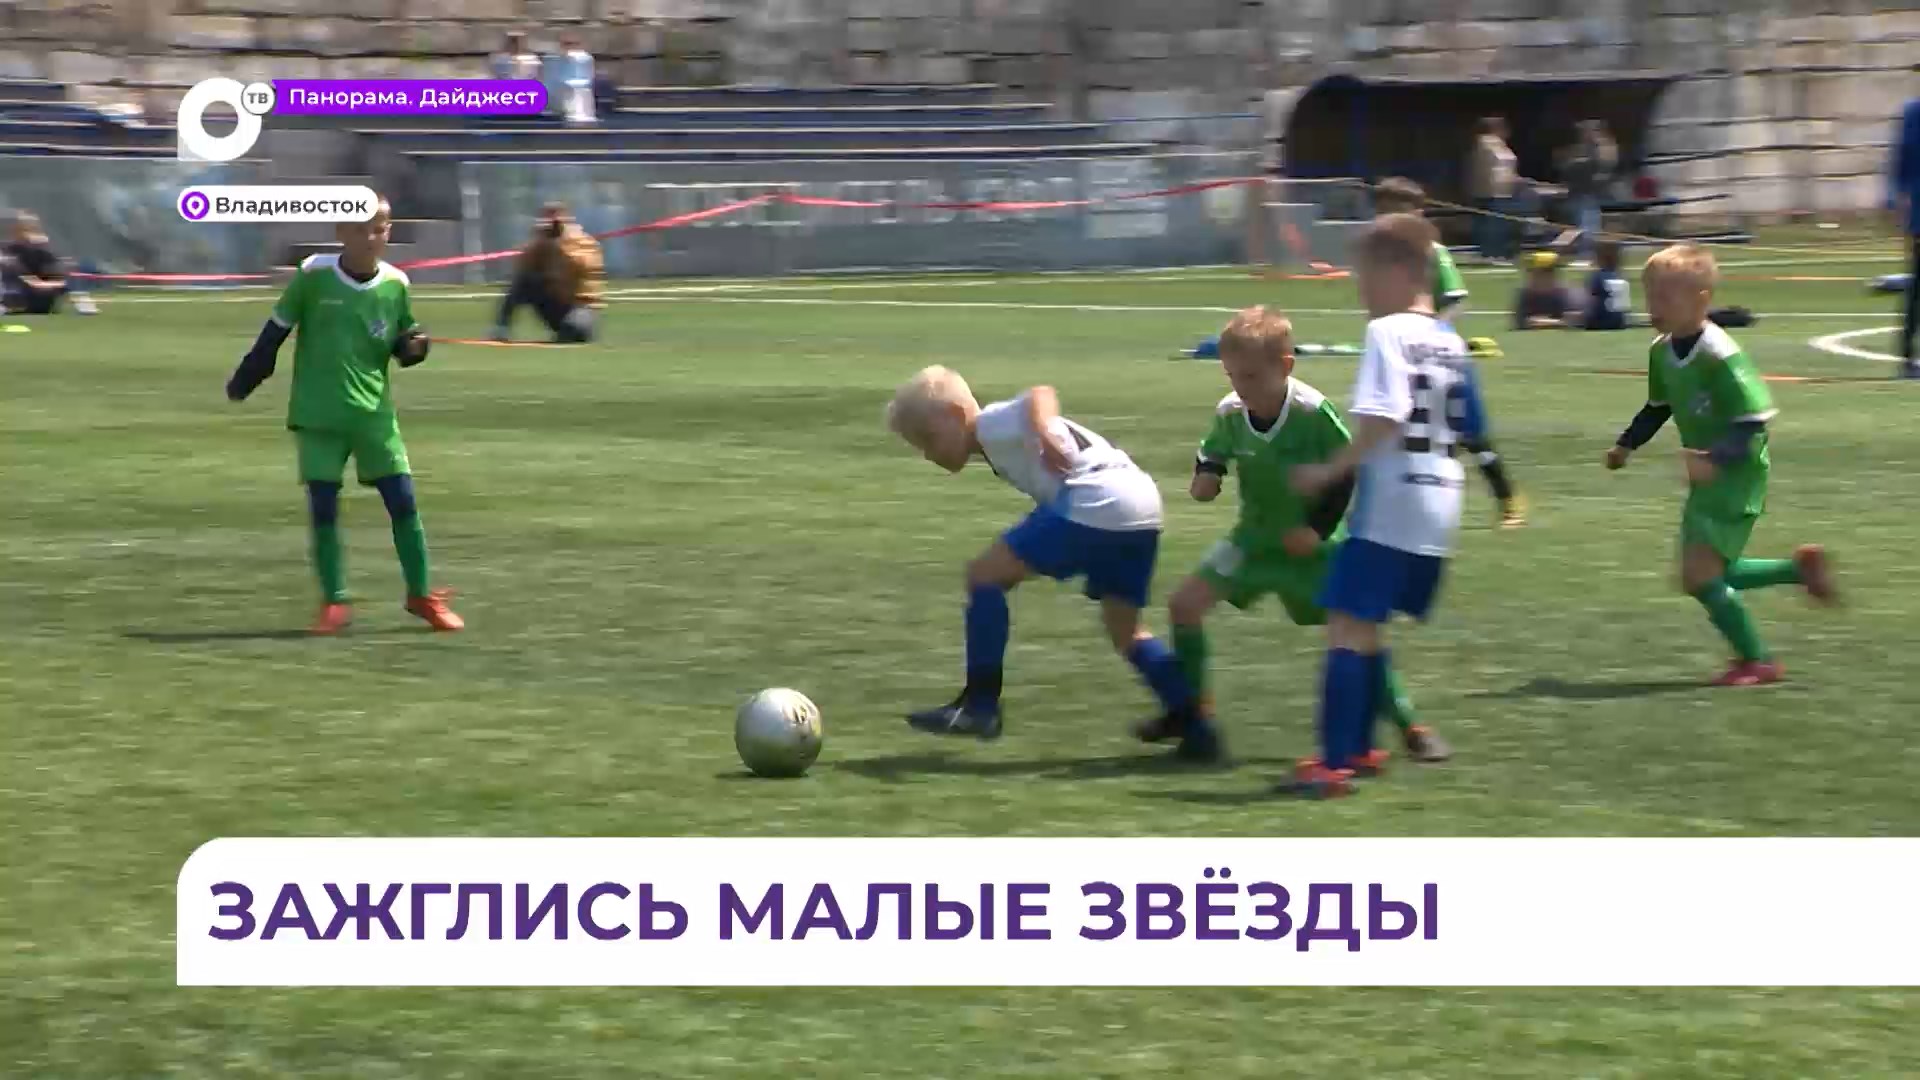 Юные футболисты сошлись на первом серьёзном турнире во Владивостоке